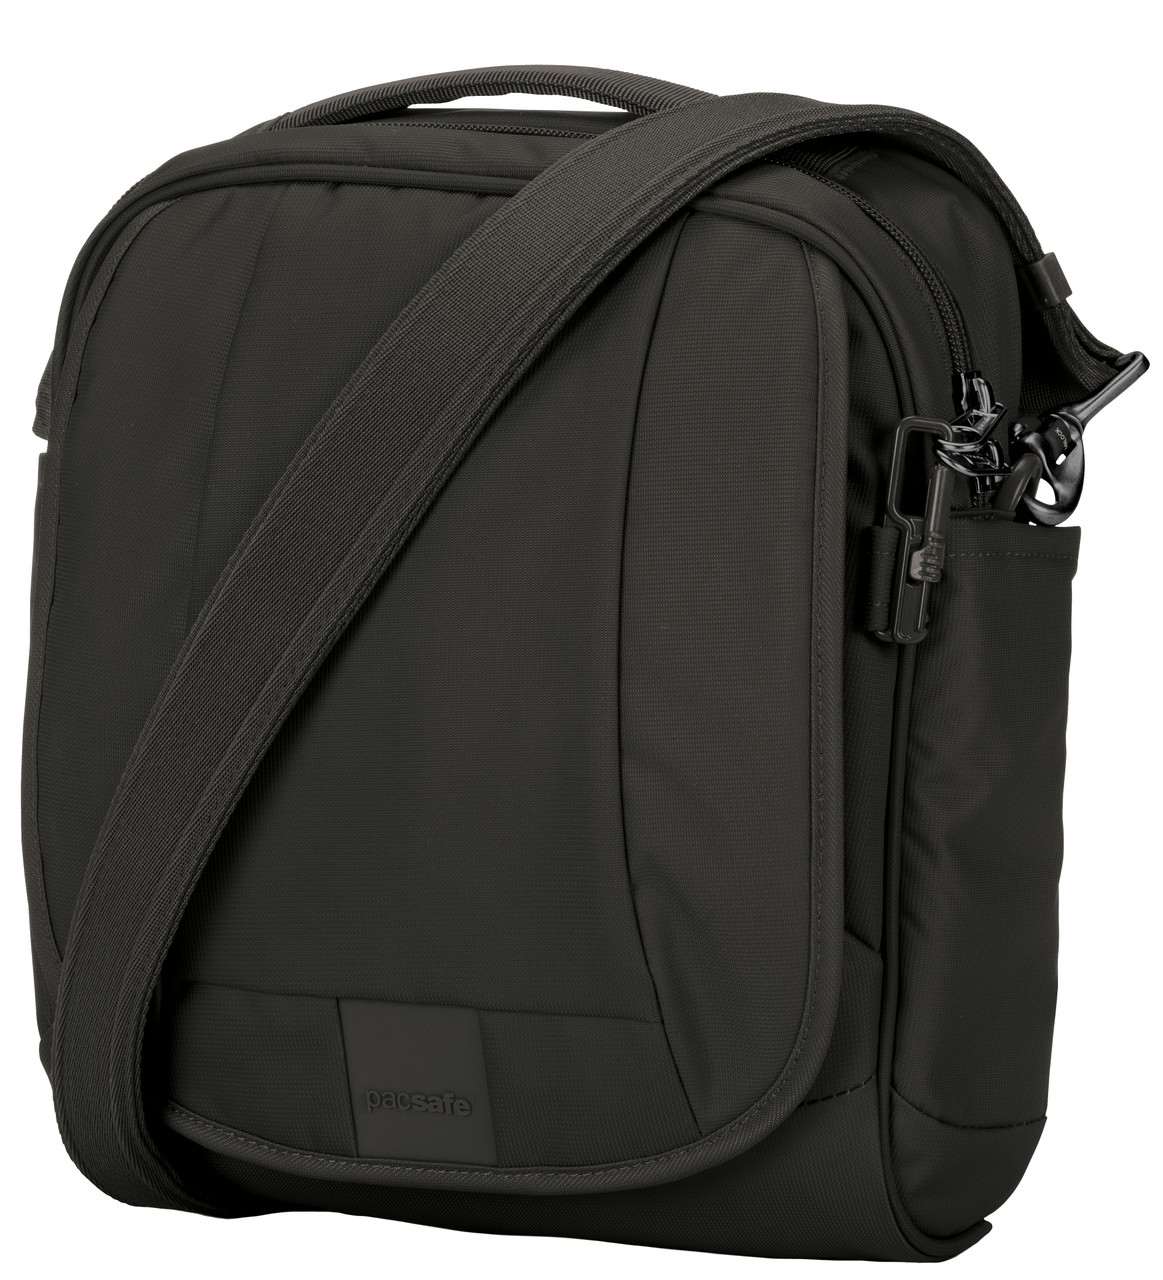 Metrosafe LS200 Anti-Theft Shoulder Bag Black